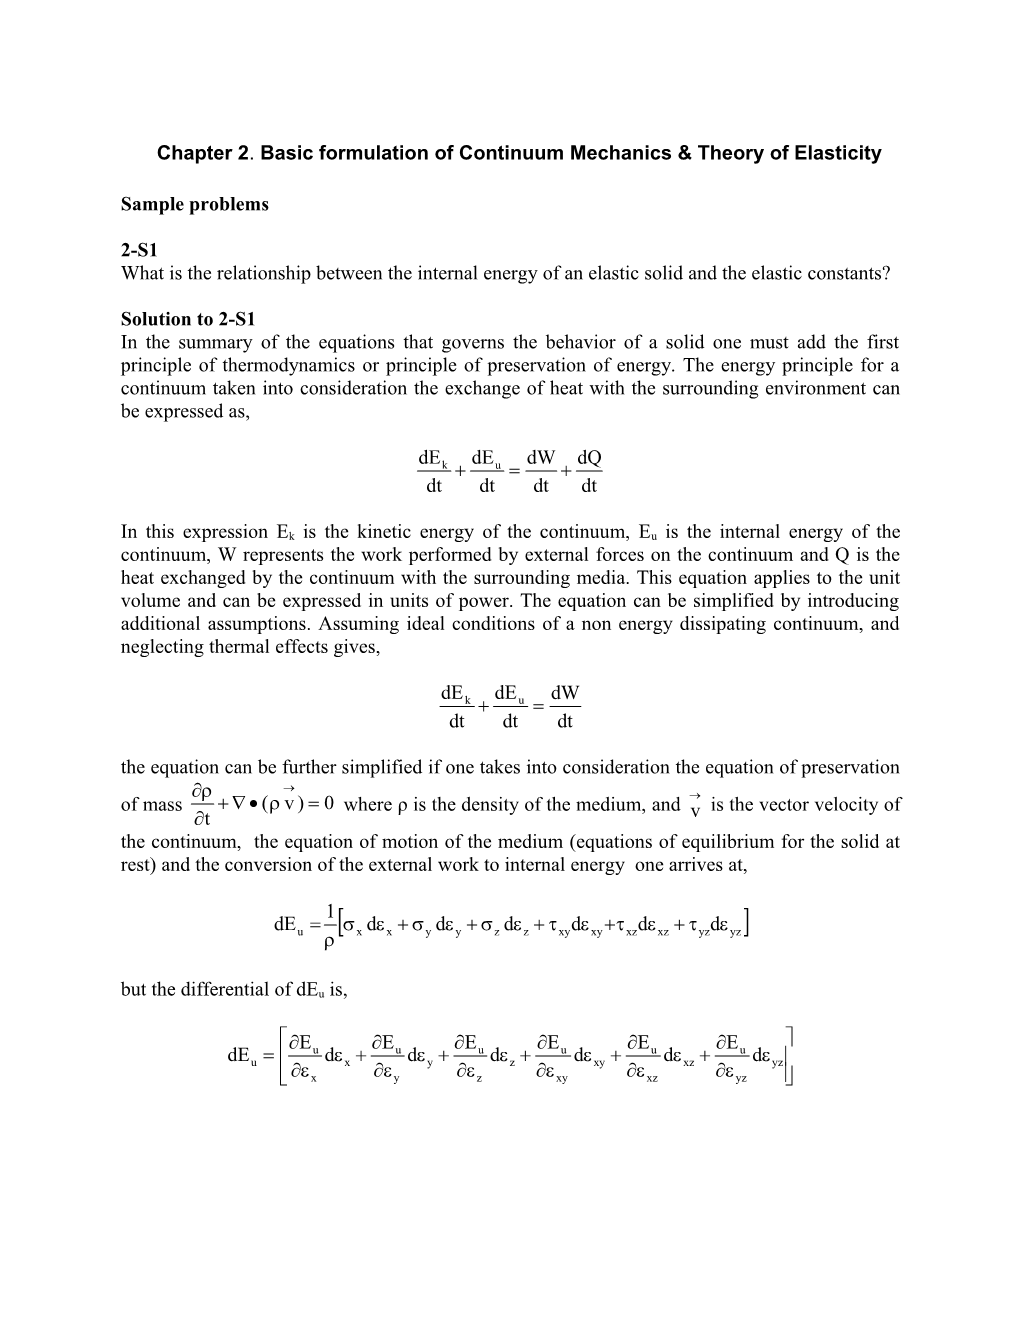 Chapter 2. Basic Formulation of Continuum Mechanics & Theory of Elasticity